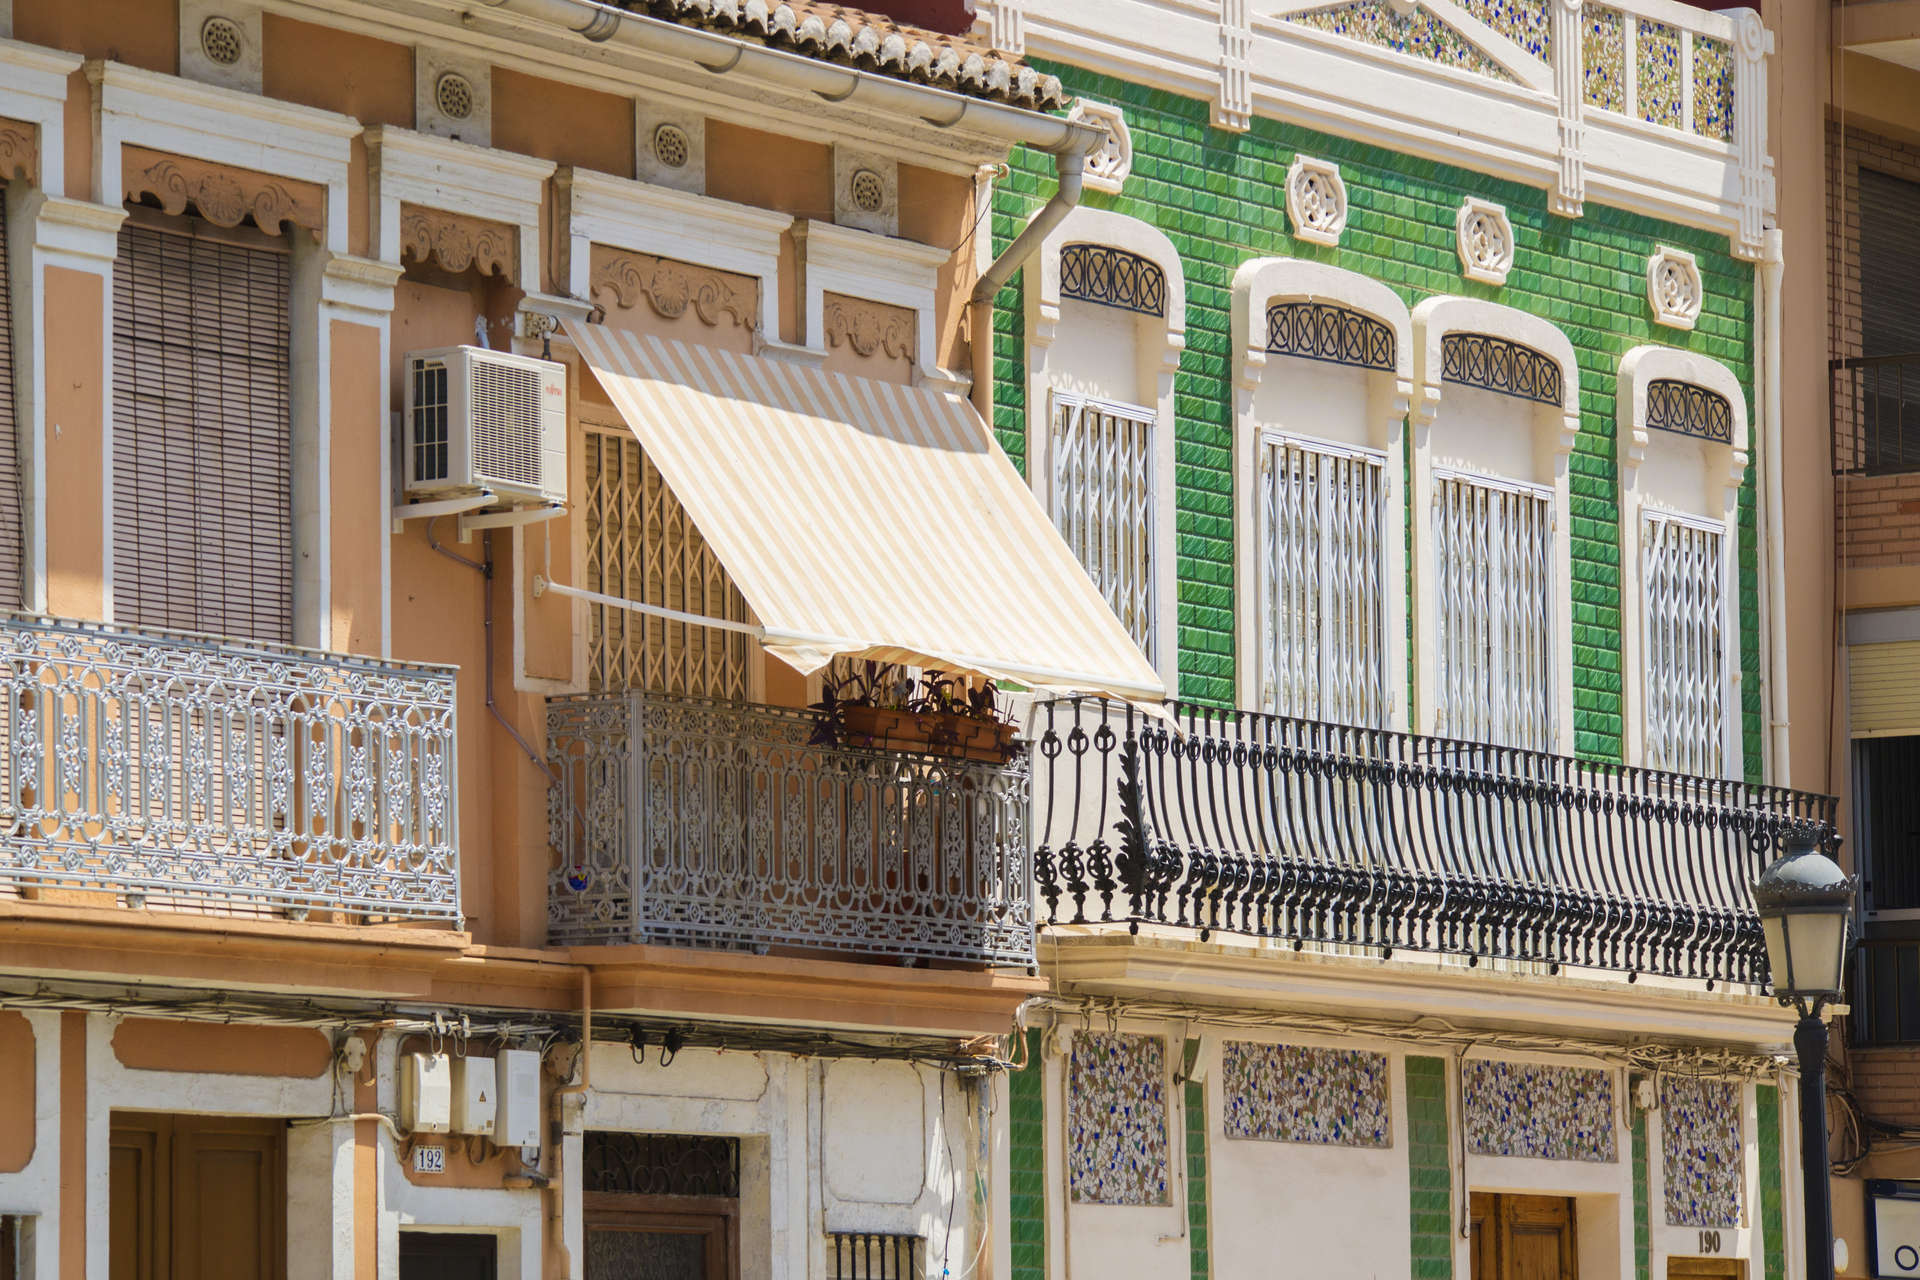 El barrio valenciano de El Cabanyal está lleno de casas históricas